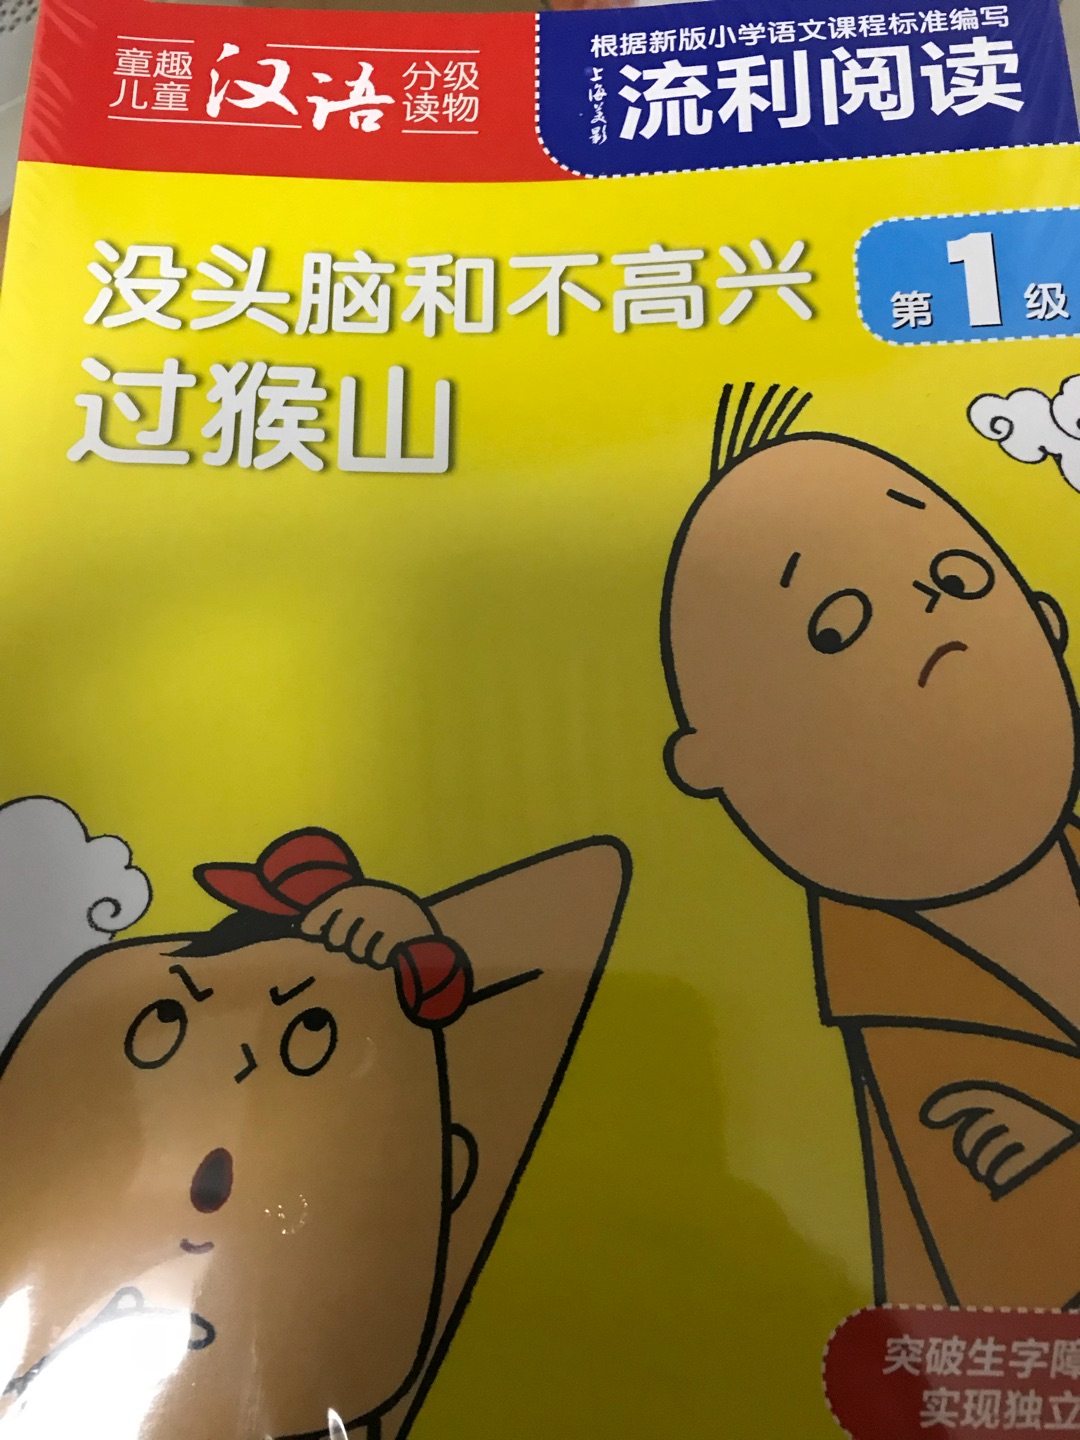 流利阅读上海美影的 中国的故事还不错 孩子感兴趣